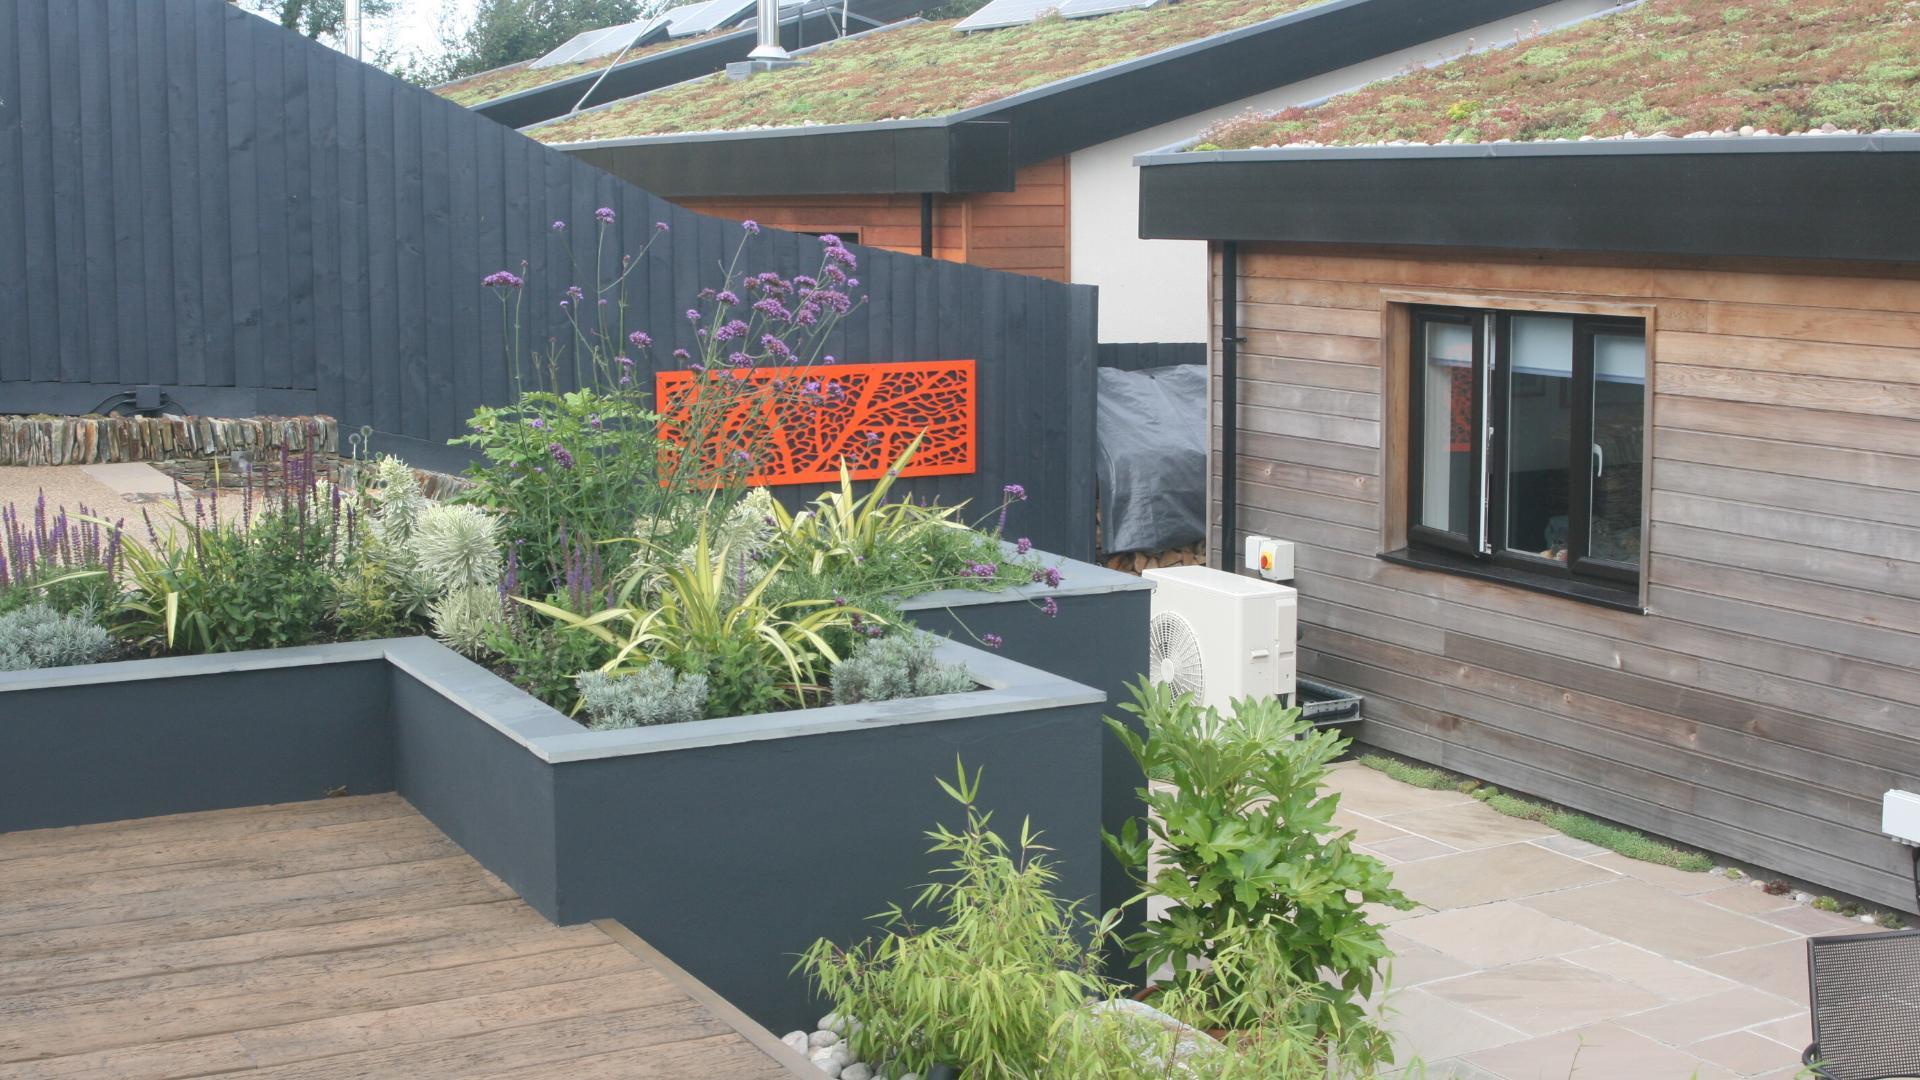 Alison Bockh Garden Design - Looking much bigger now